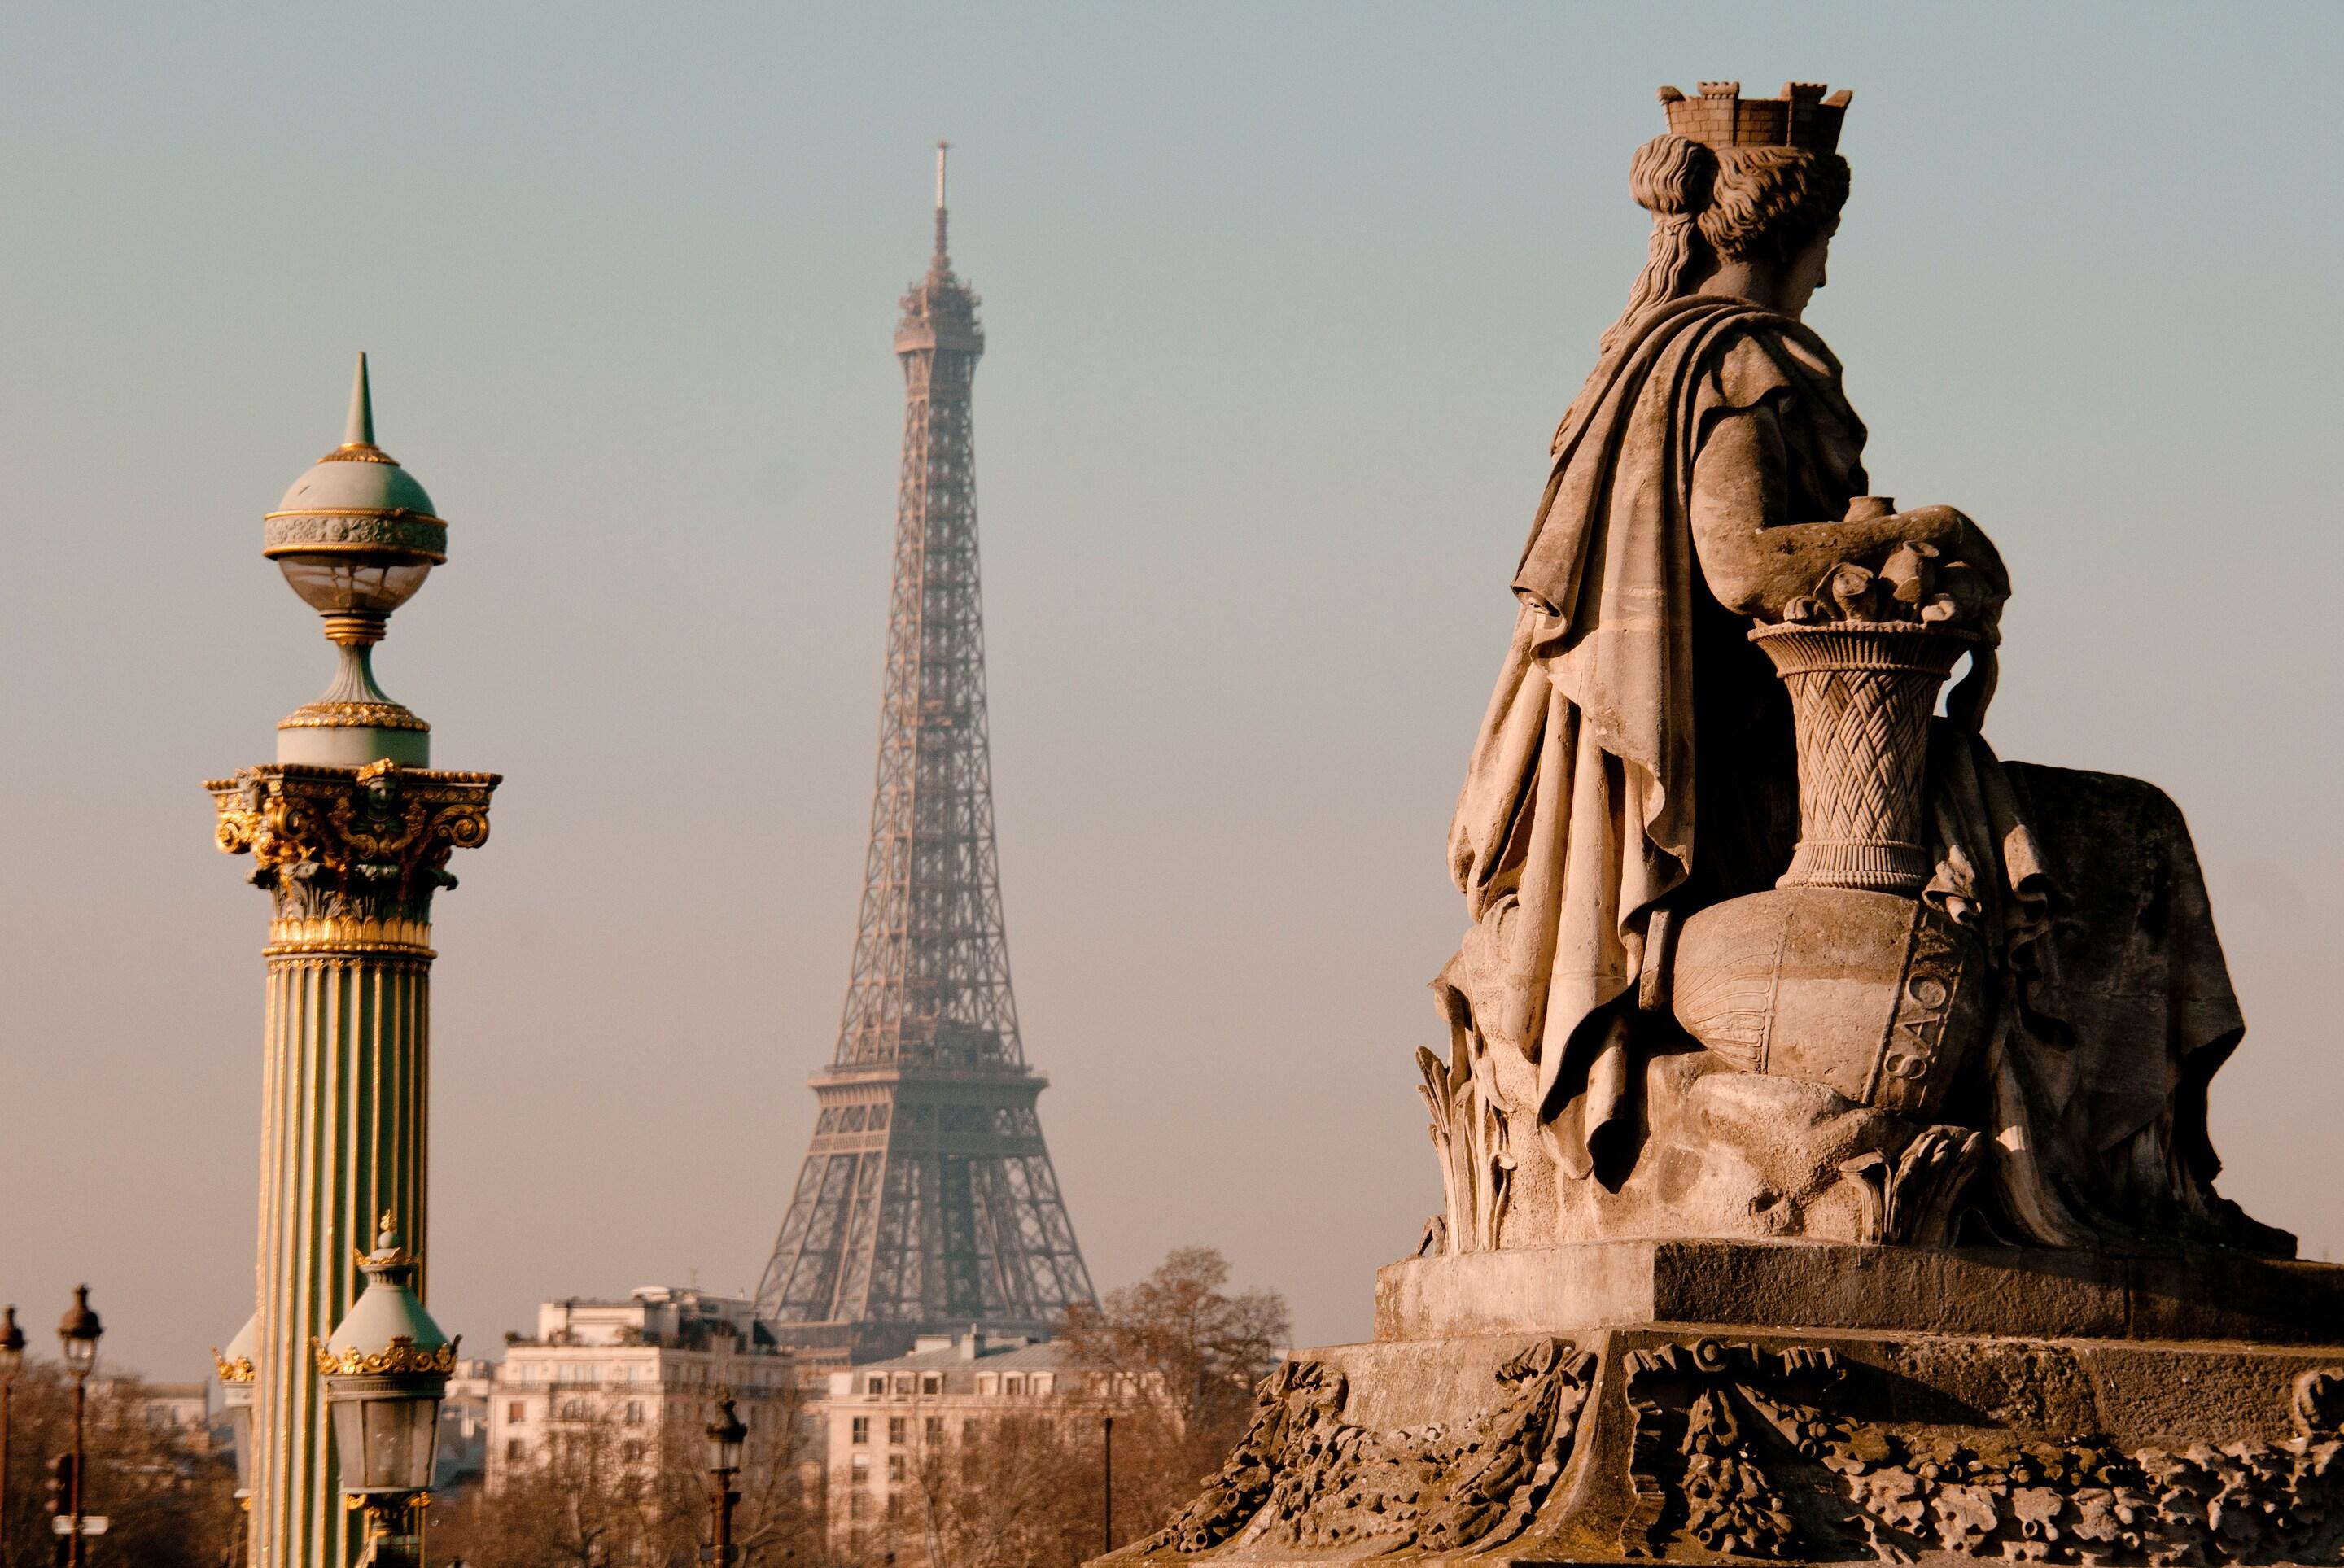 Paris secret : à la découverte des coins cachés que vous ne connaissiez pas